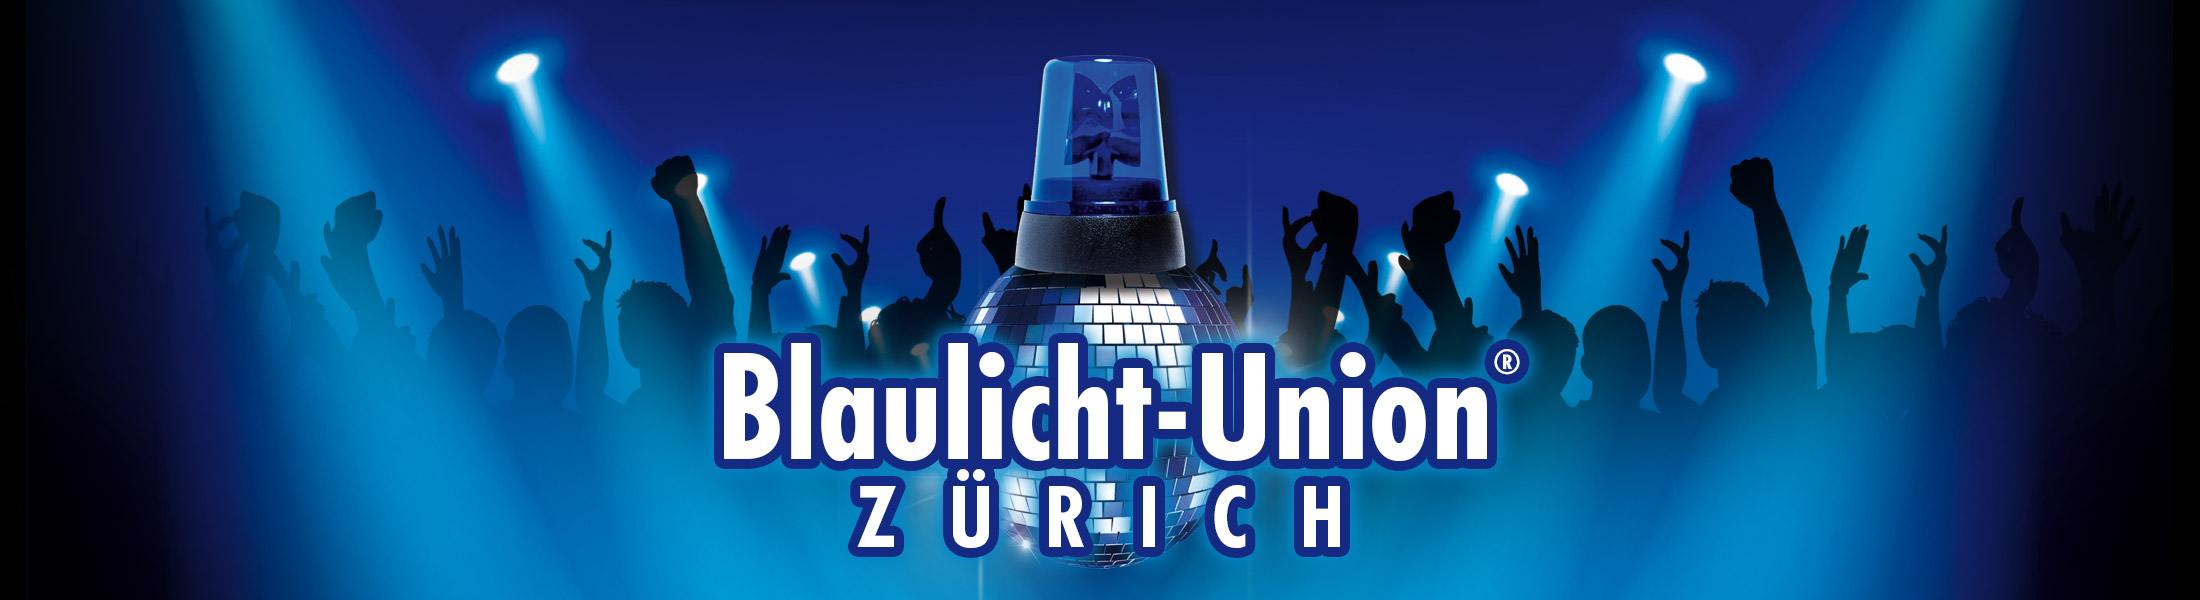 Blaulicht Union Party® Zürich